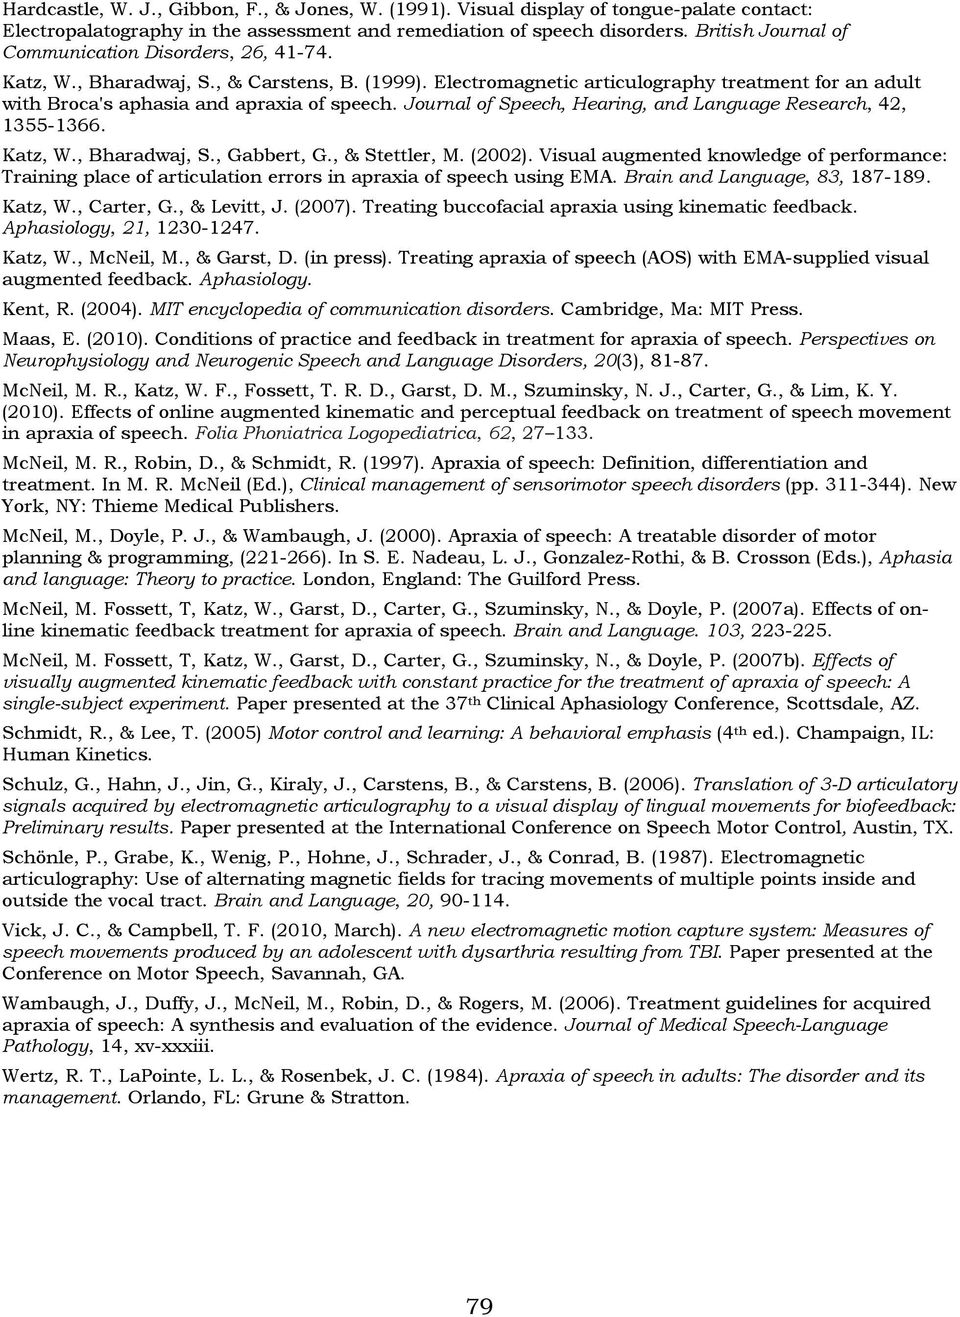 Journal of Speech, Hearing, and Language Research, 42, 1355-1366. Katz, W., Bharadwaj, S., Gabbert, G., & Stettler, M. (2002).